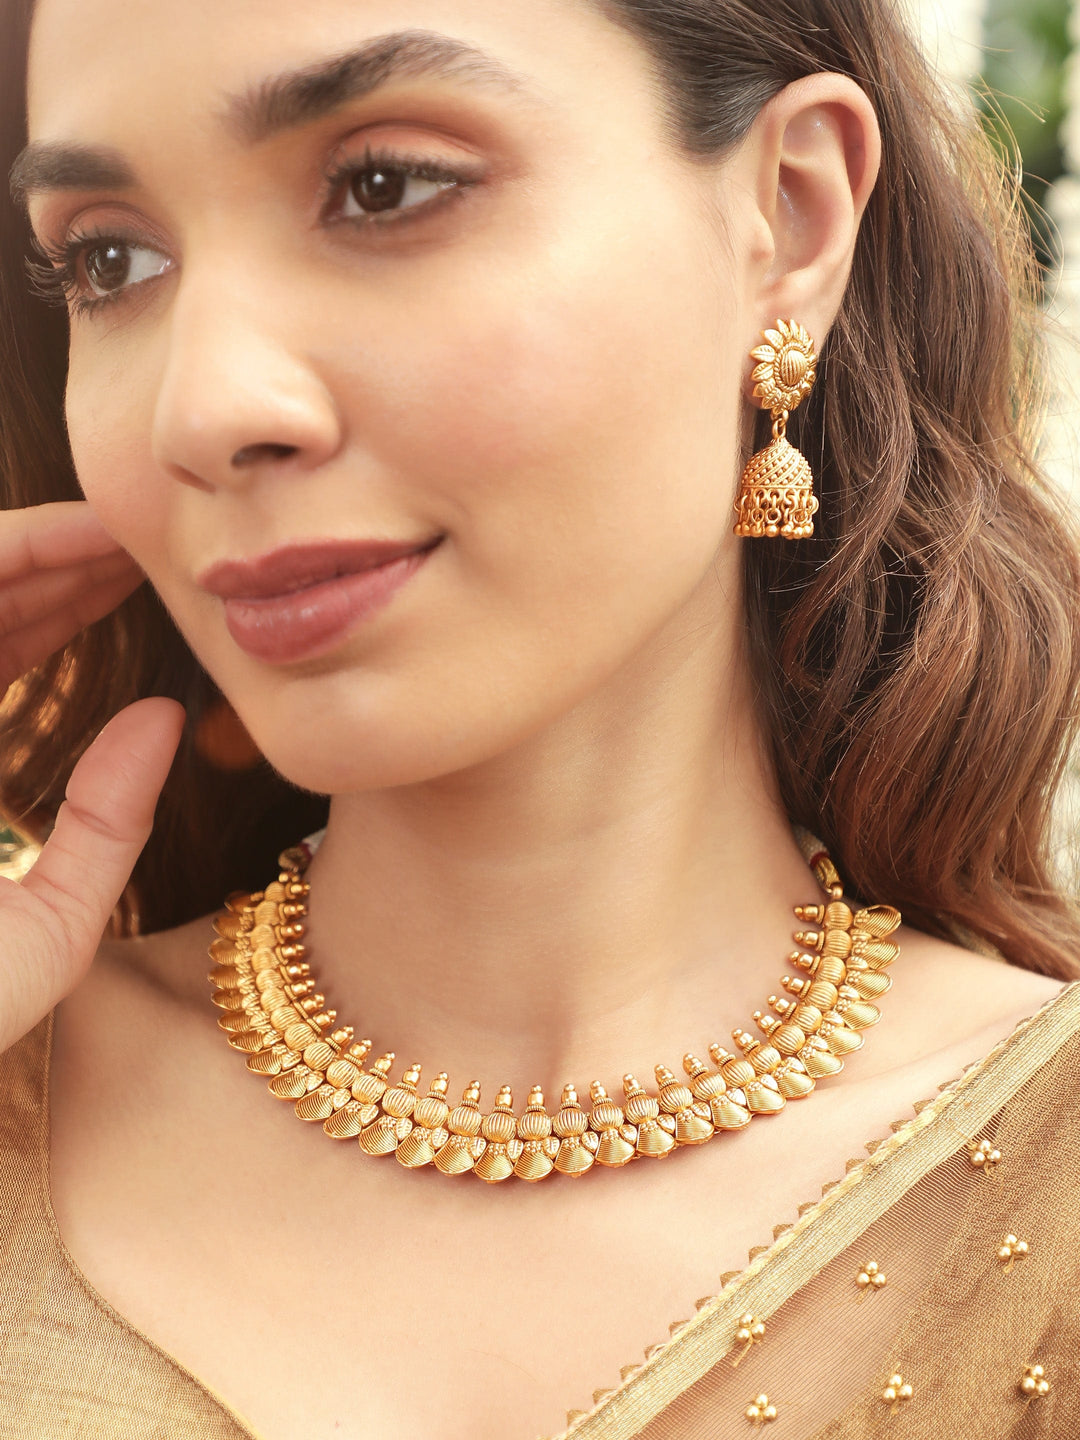 Rubans Golden Petals Luxurious 22k Gold-Plated Floral Necklace Set Necklaces, Necklace Sets, Chains & Mangalsutra